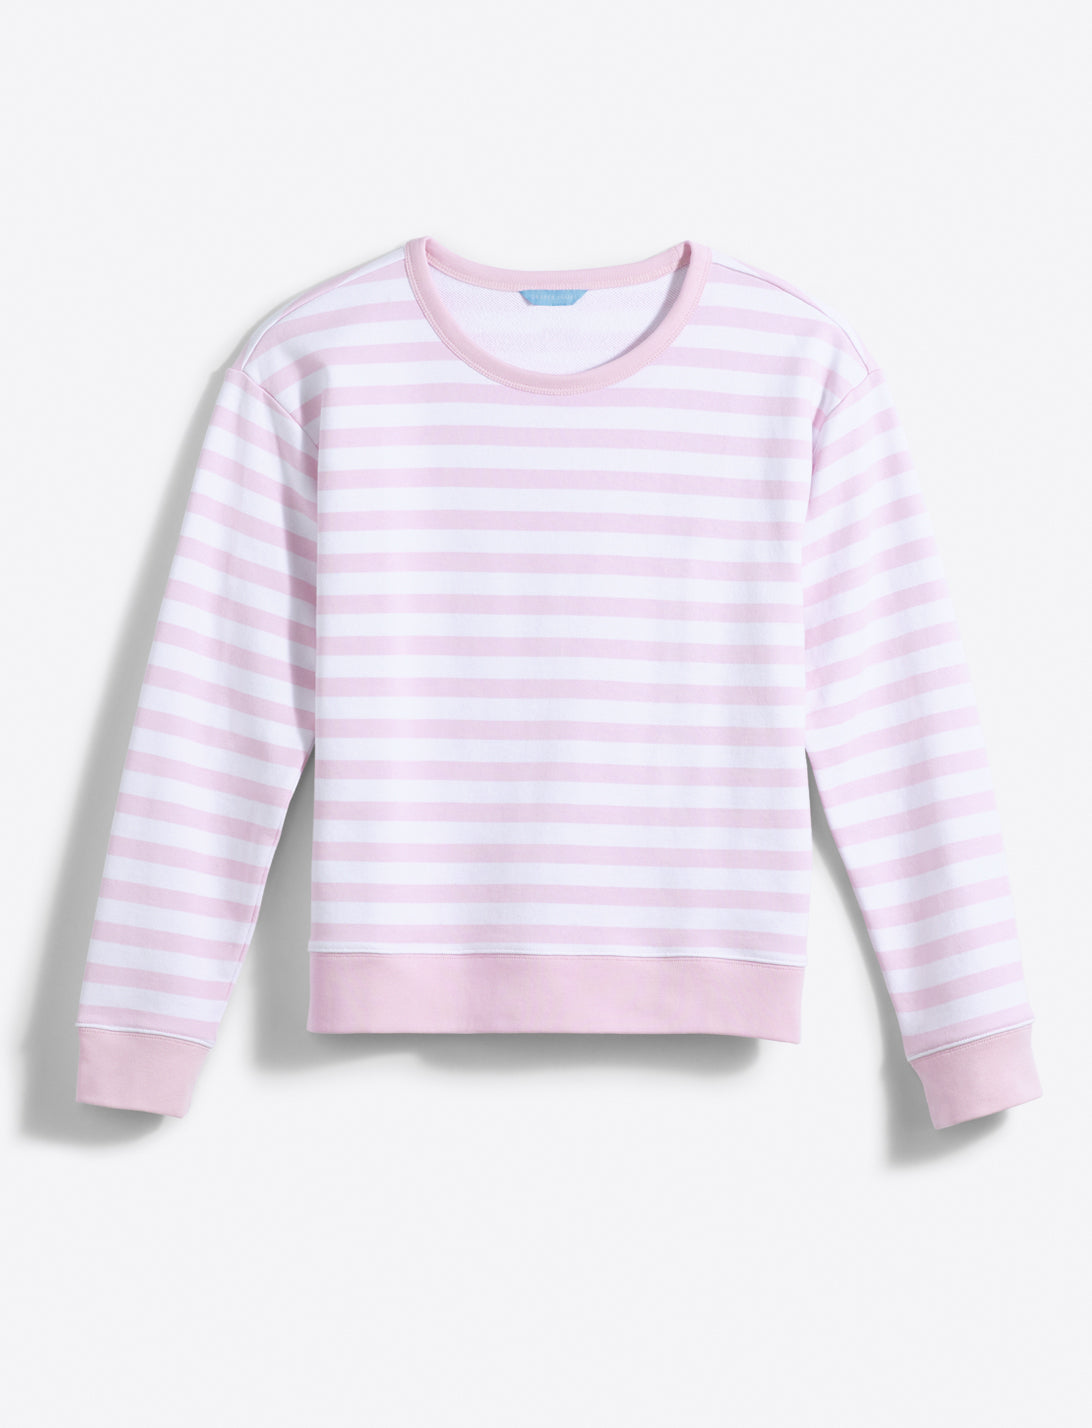 Kelsea Sweatshirt in Awning Stripe – Draper James